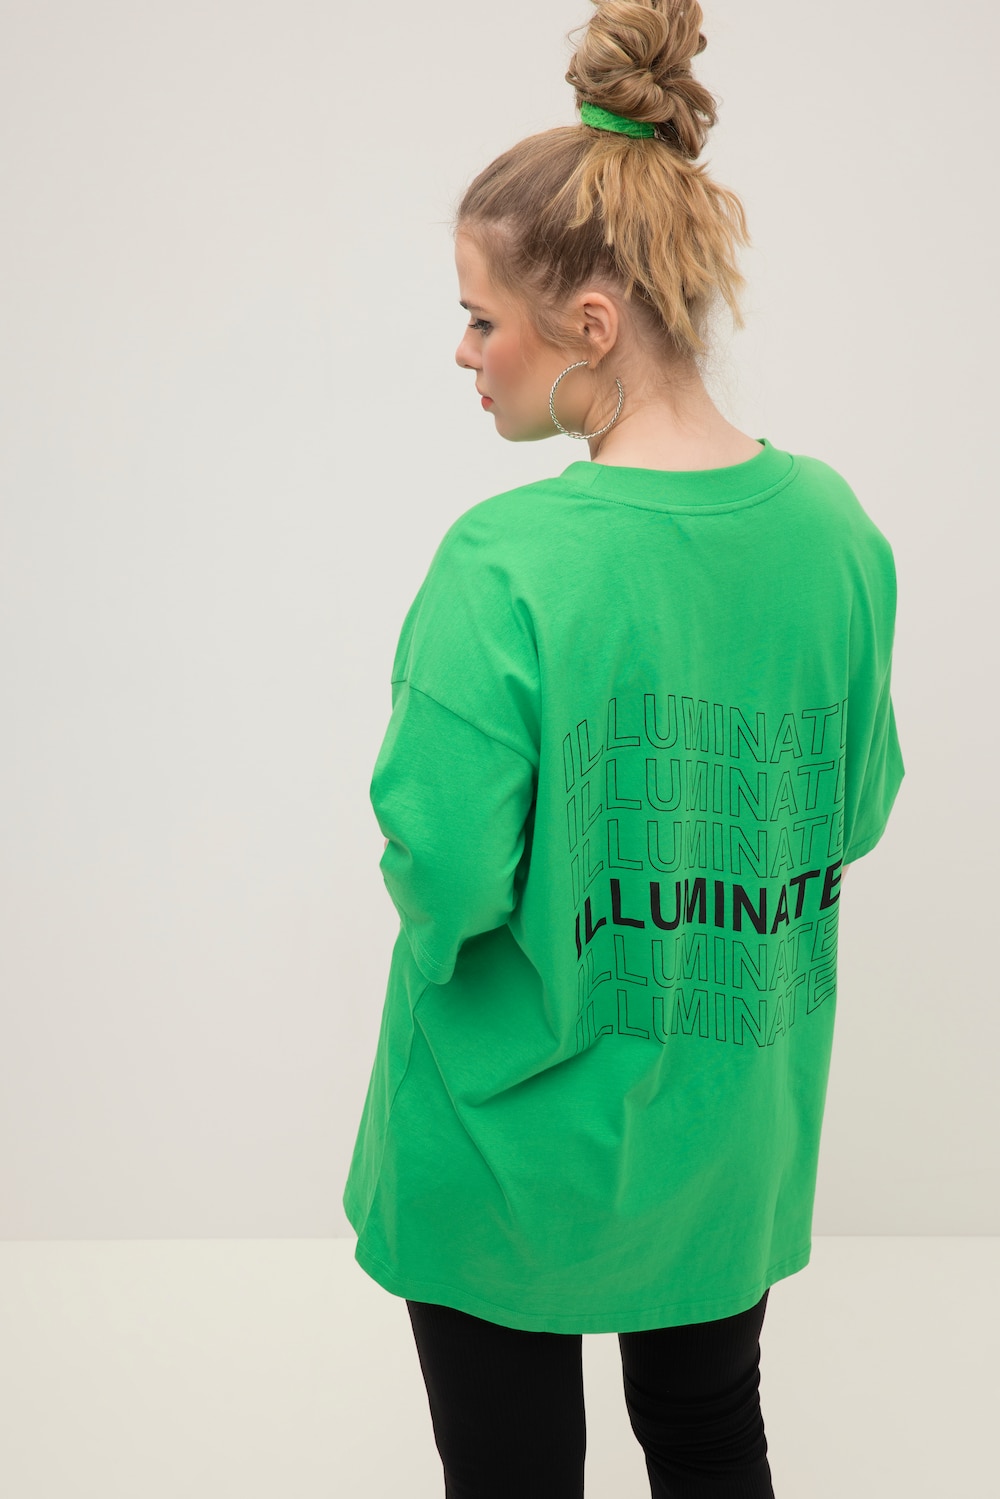 Grote Maten T-shirt, Dames, groen, Maat: 42/44, Katoen, Studio Untold